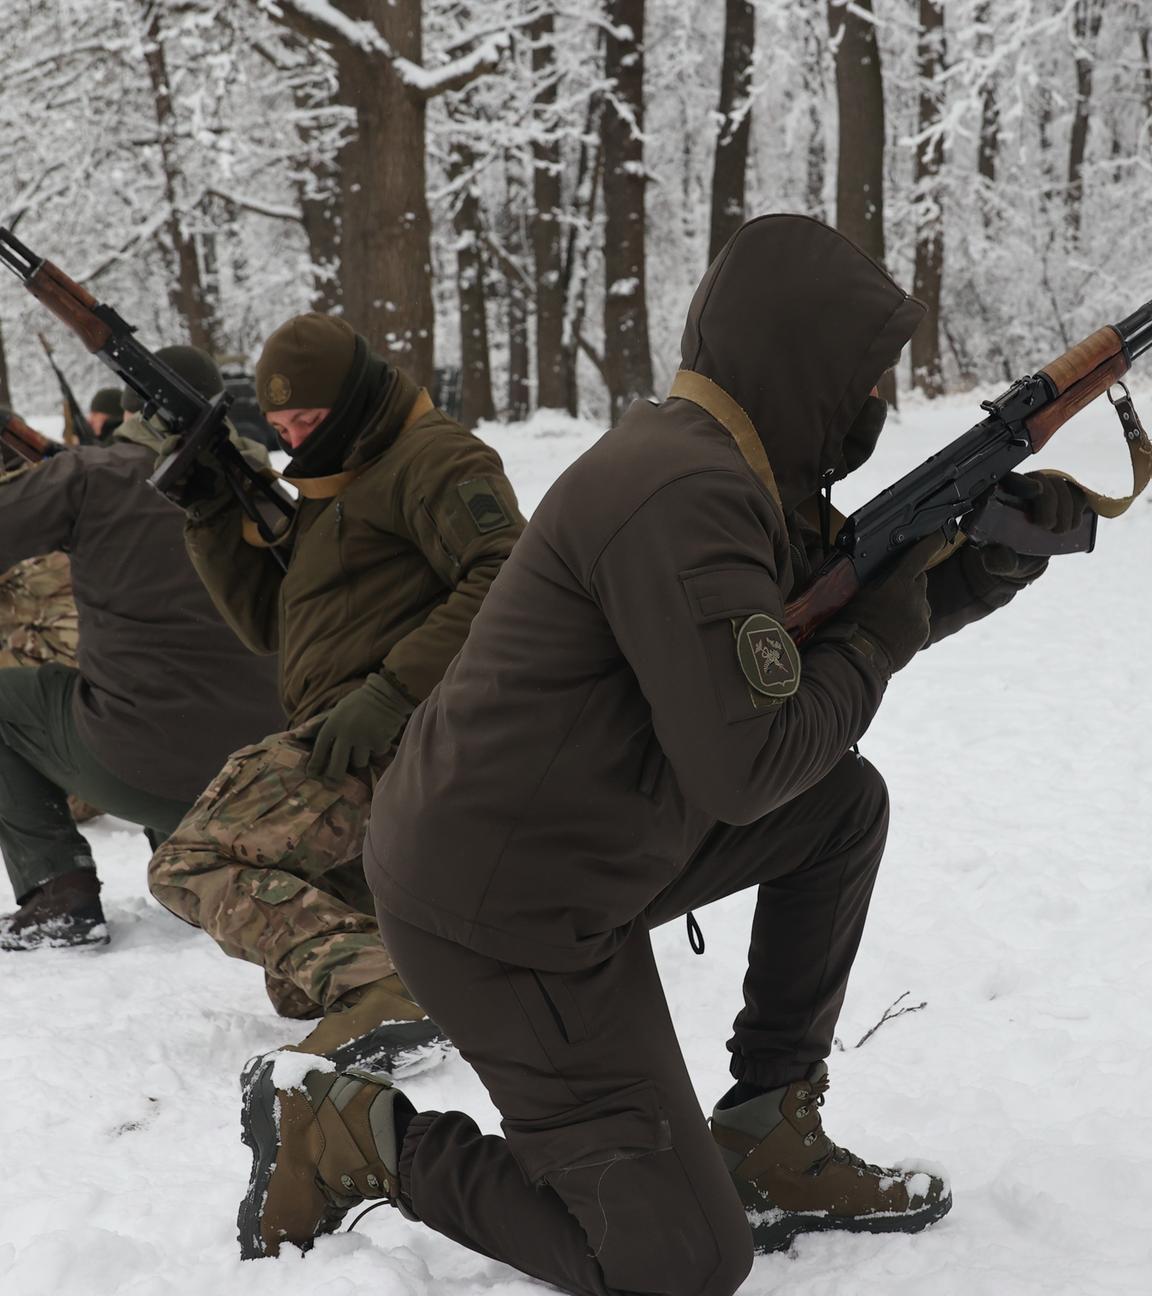 ARCHIV - 14.12.2023, Ukraine, Charkiw: Oberfeldwebel der Einheiten des Operativen und Territorialen Kommandos Ost der ukrainischen Nationalgarde erhalten eine Spezialausbildung unter Feldbedingungen in der Region Charkiw im Nordosten der Ukraine.